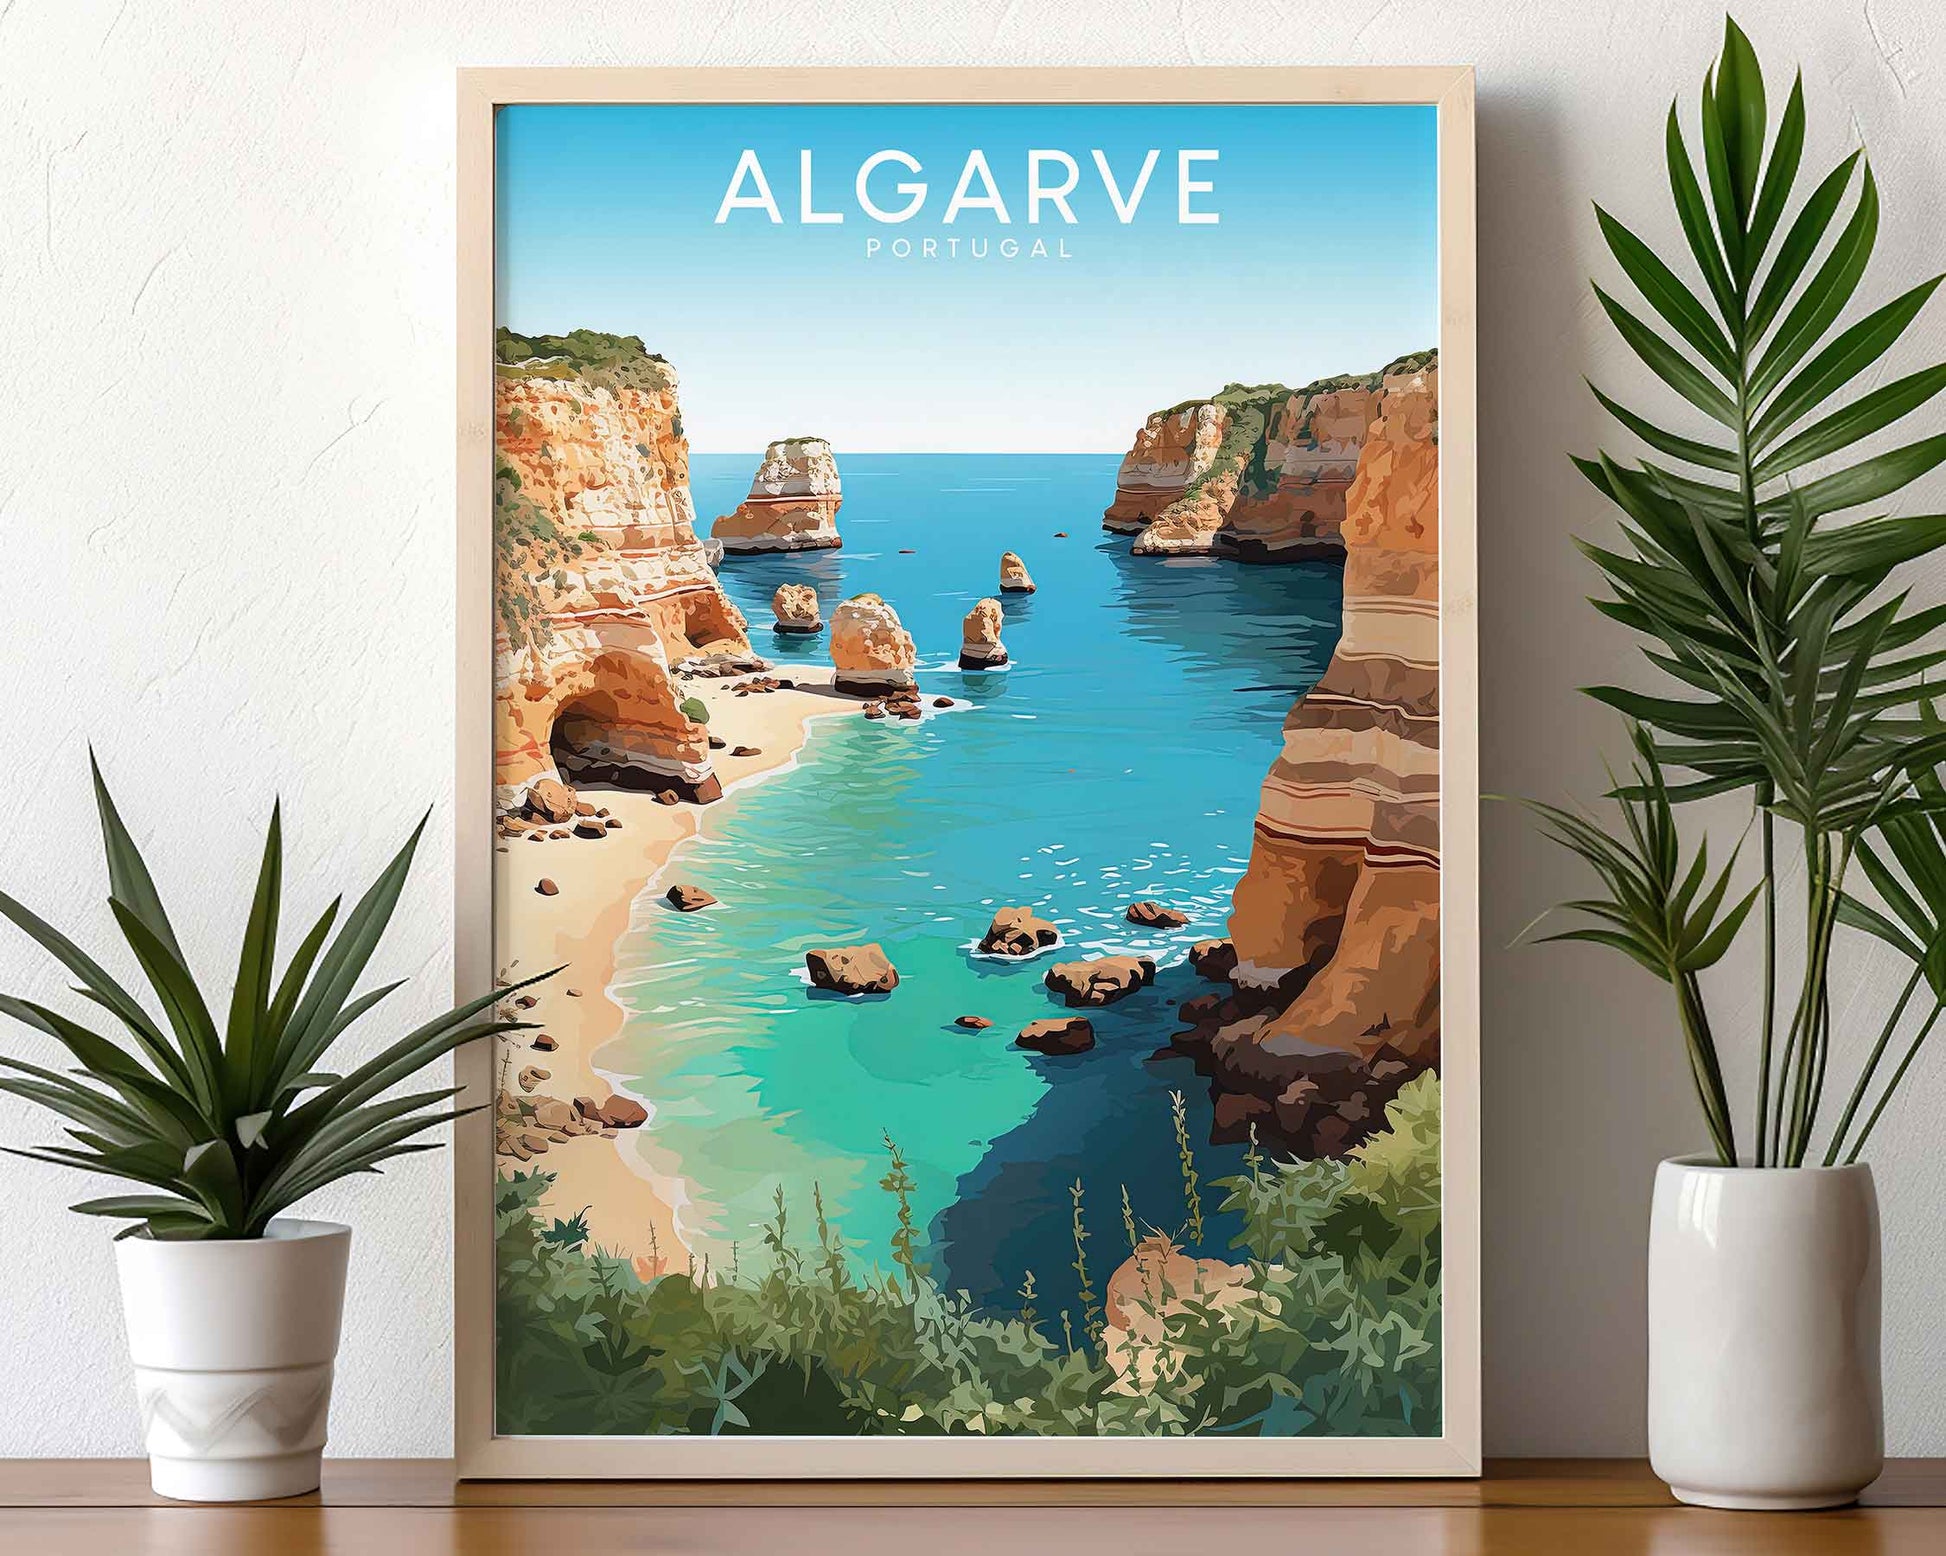 Framed Image of Algarve Portugal Travel Wall Art Poster Prints Illustration